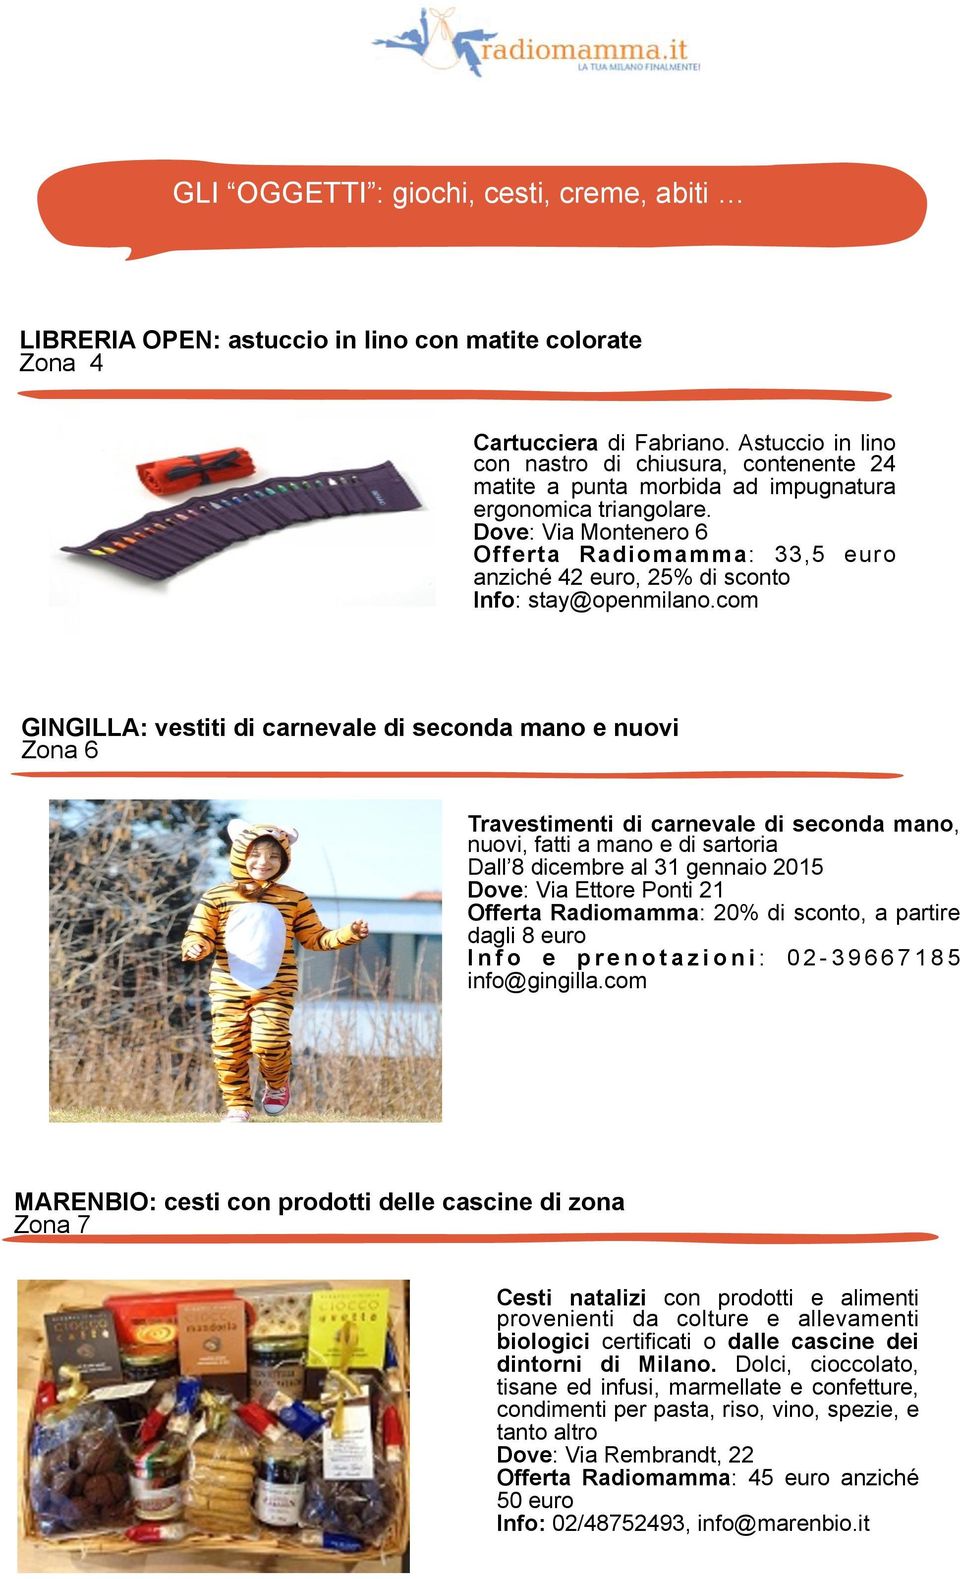 Dove: Via Montenero 6 Offerta Radiomamma: 33,5 euro anziché 2 euro, 25% di sconto Info: stay@openmilano.